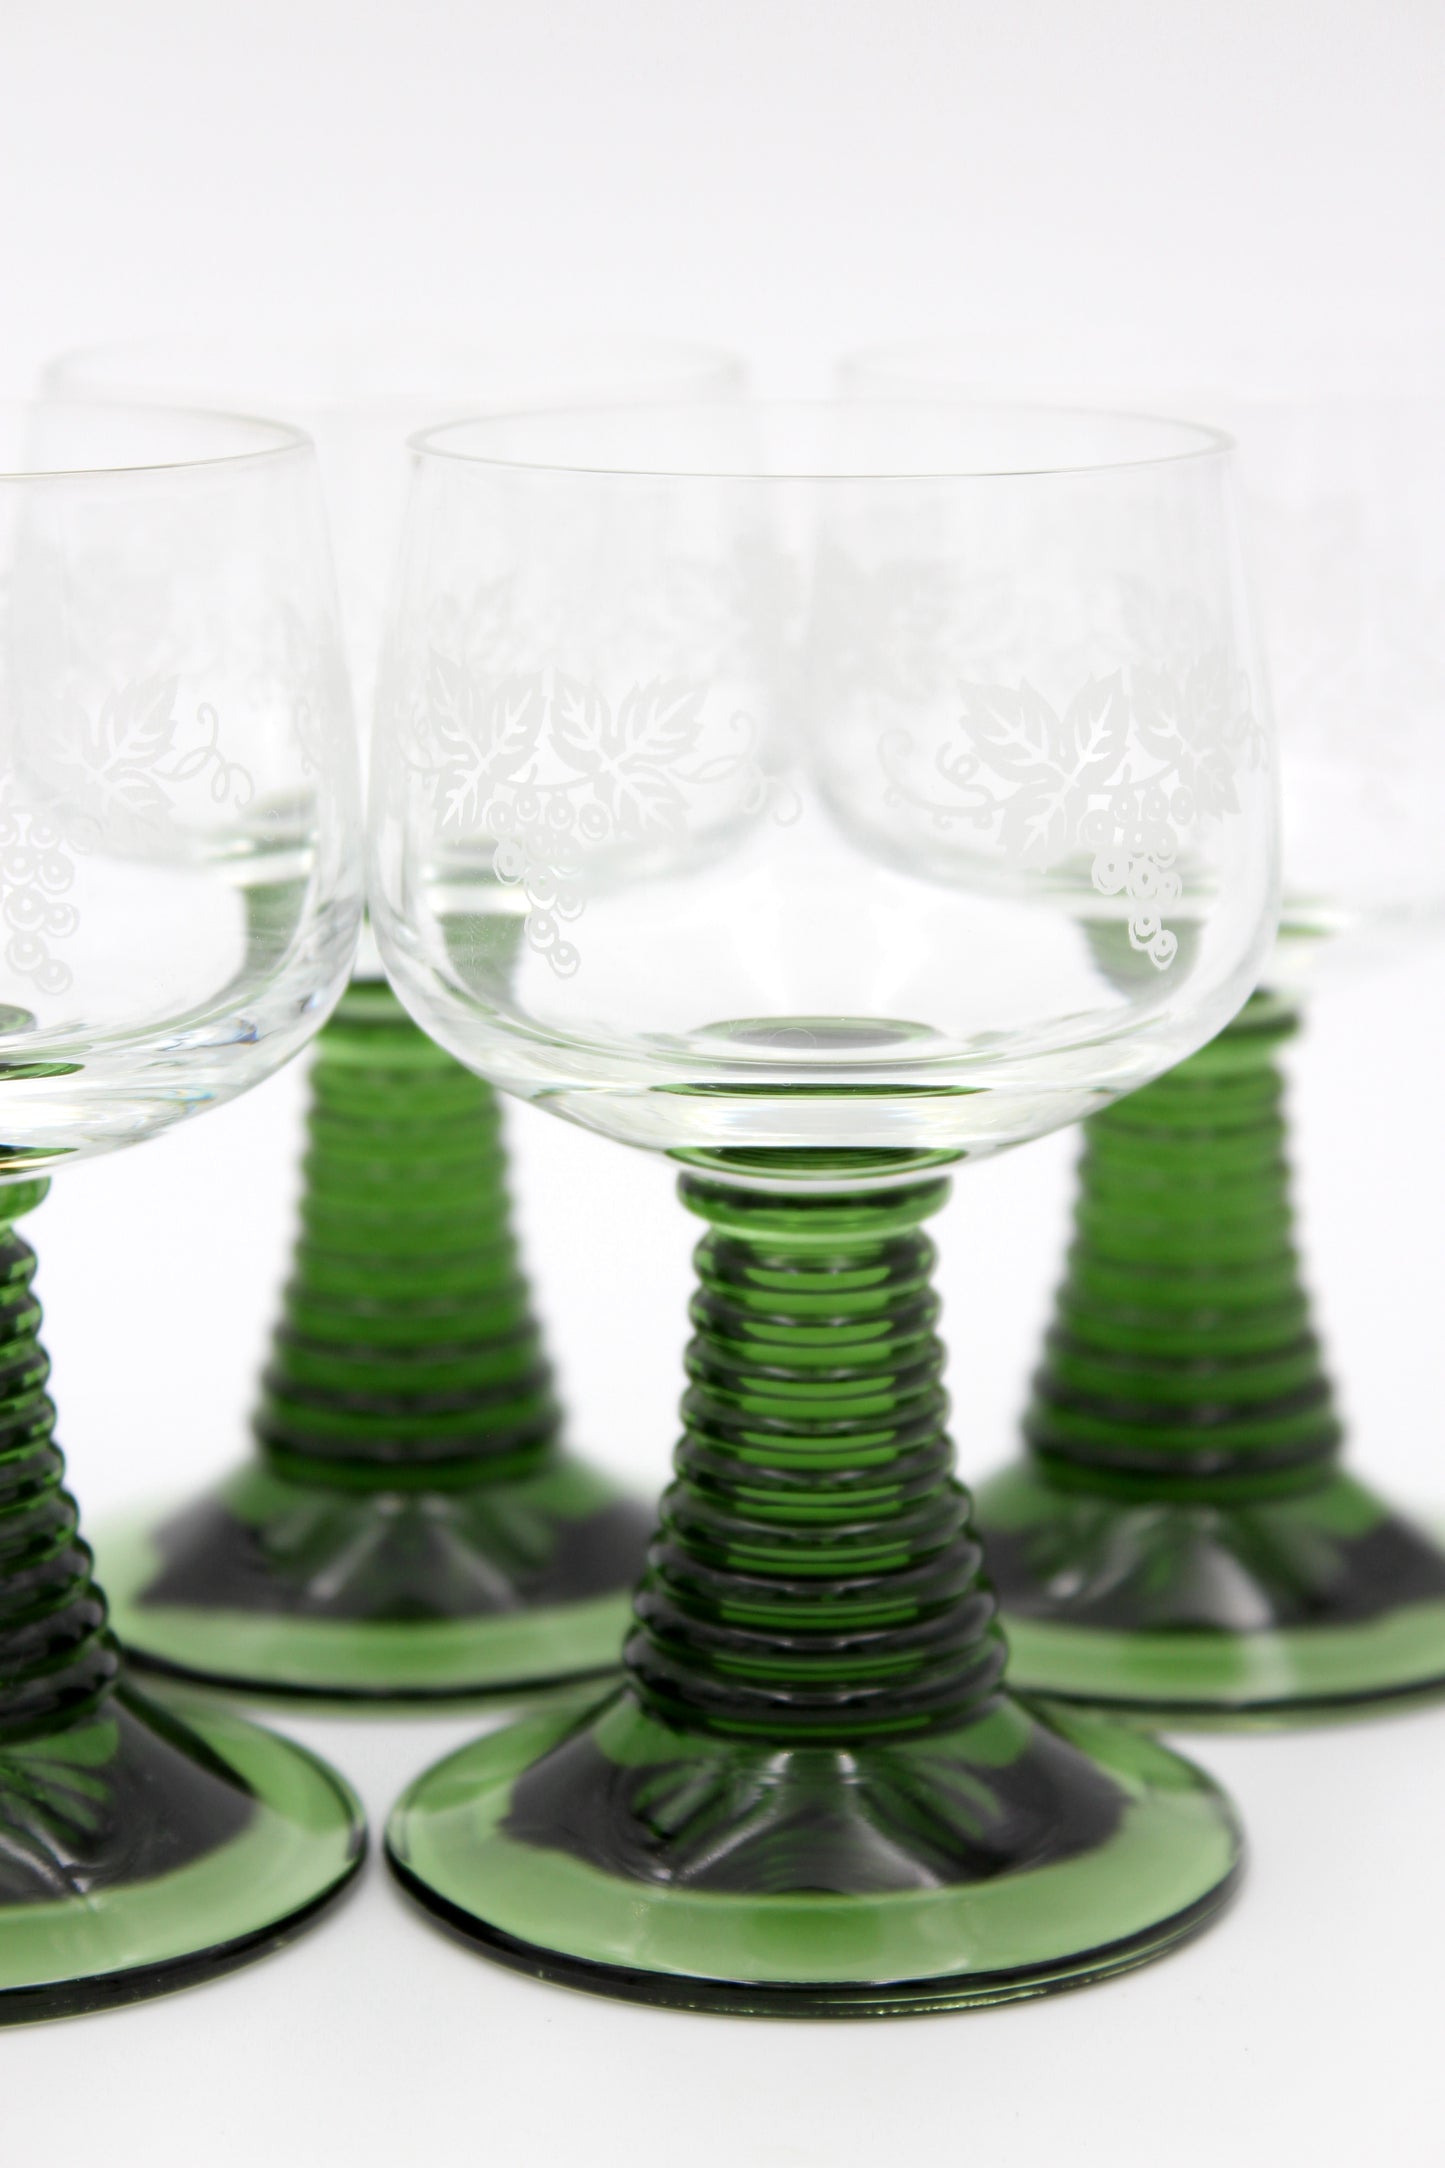 Römer glass, green